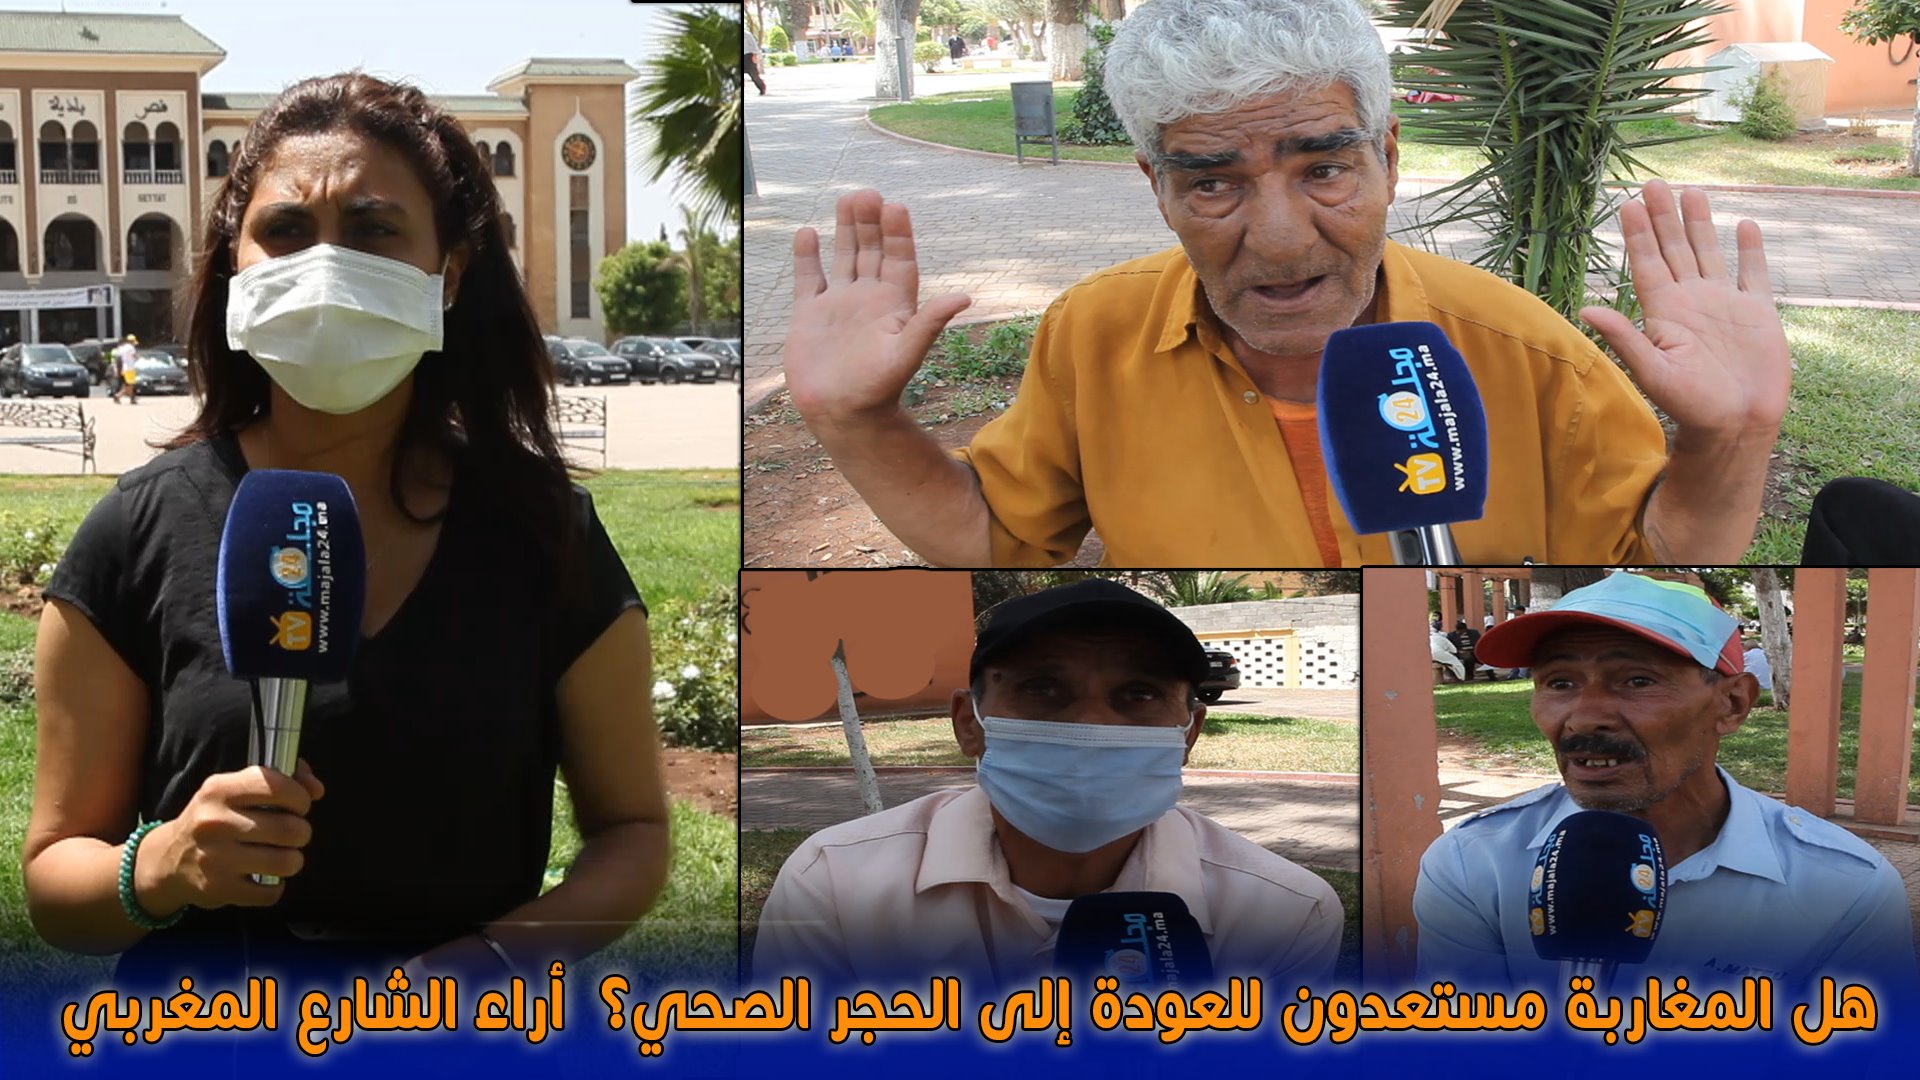 بالفيديو.. أراء المواطنين حول الاستعداد للرجوع إلى الحجر الصحي